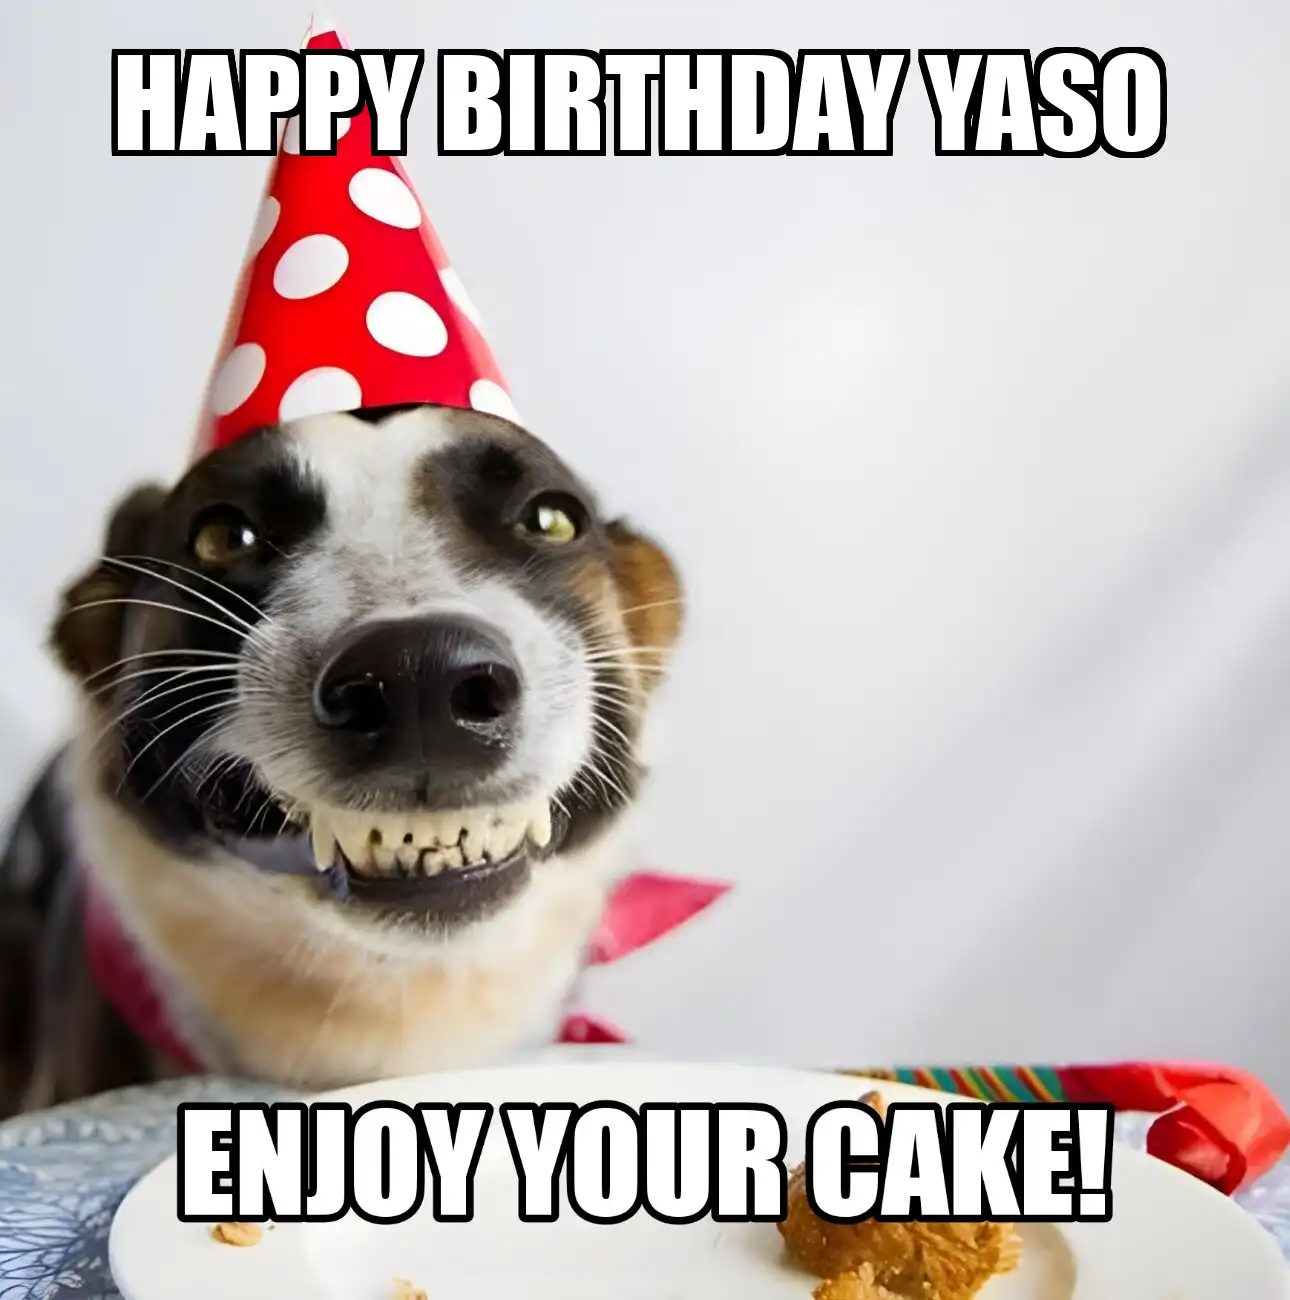 Happy Birthday Yaso Enjoy Your Cake Dog Meme